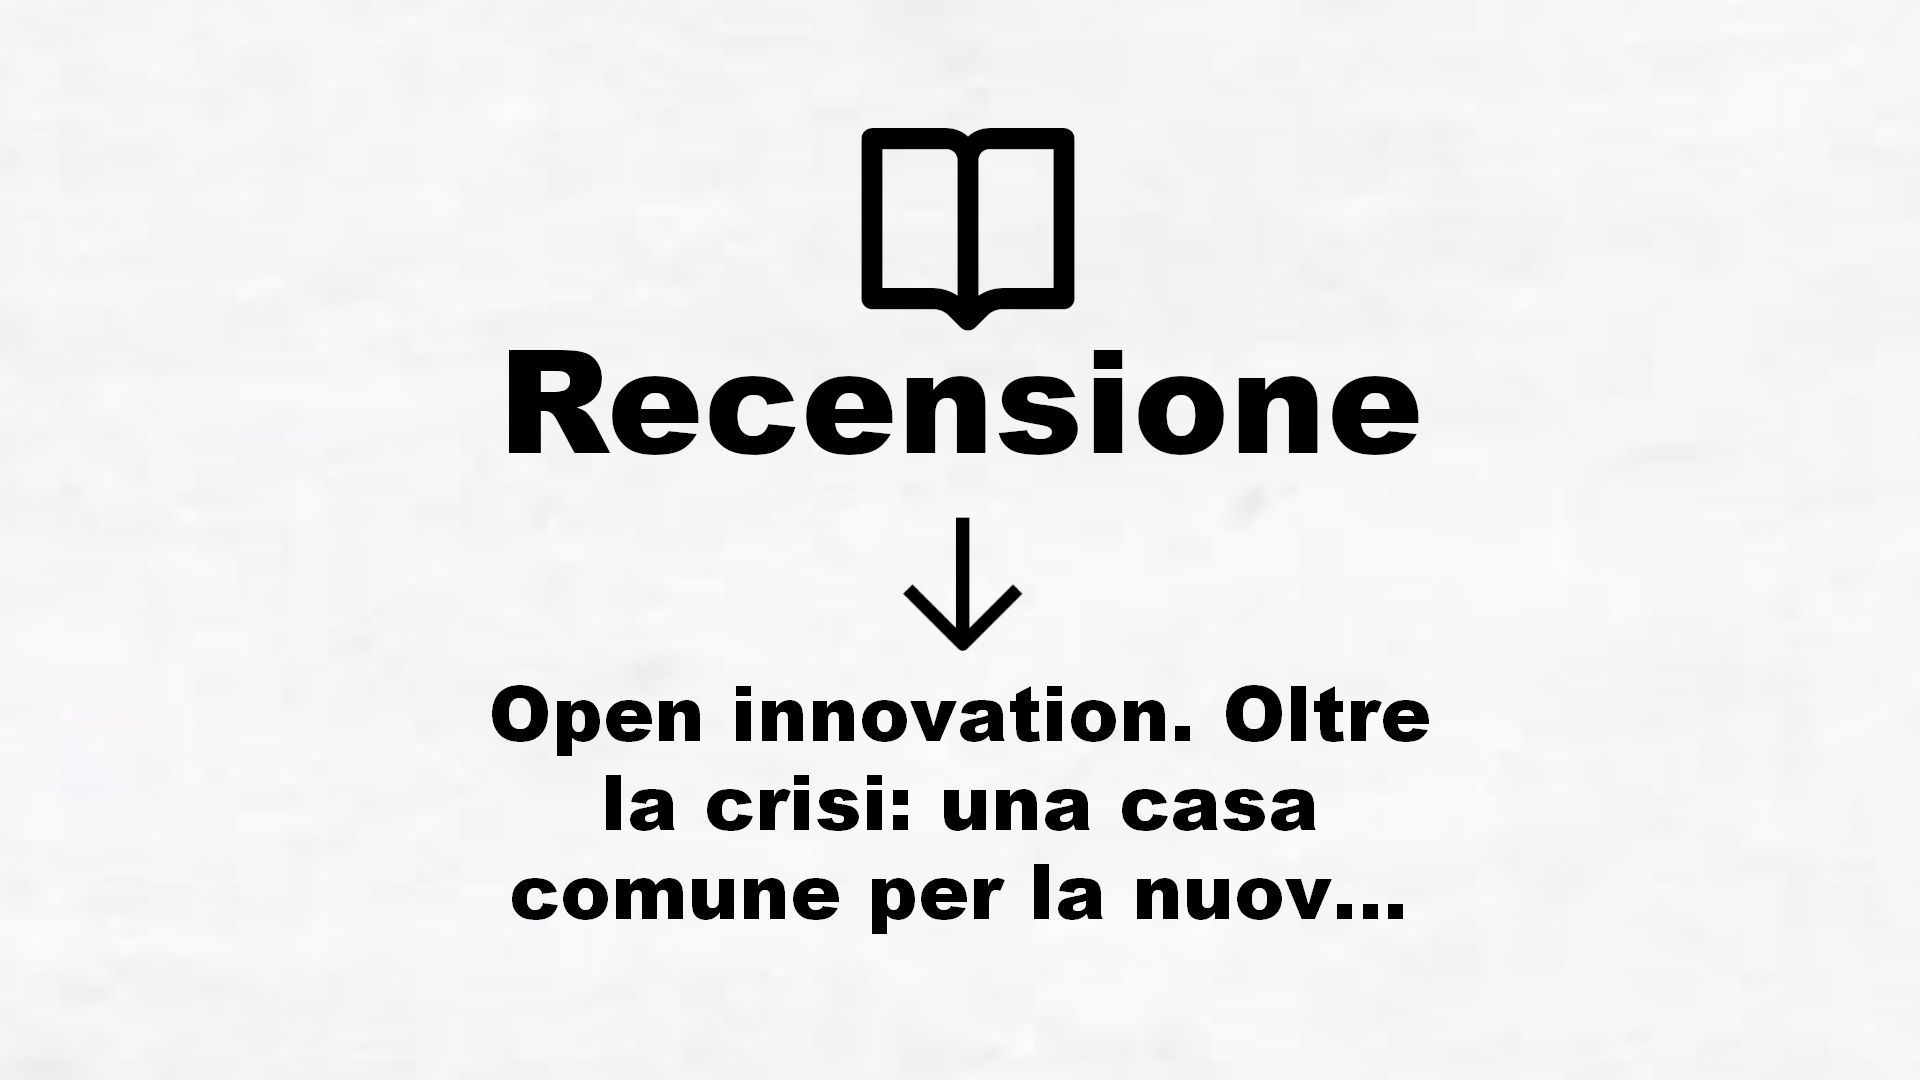 Open innovation. Oltre la crisi: una casa comune per la nuova economia – Recensione Libro